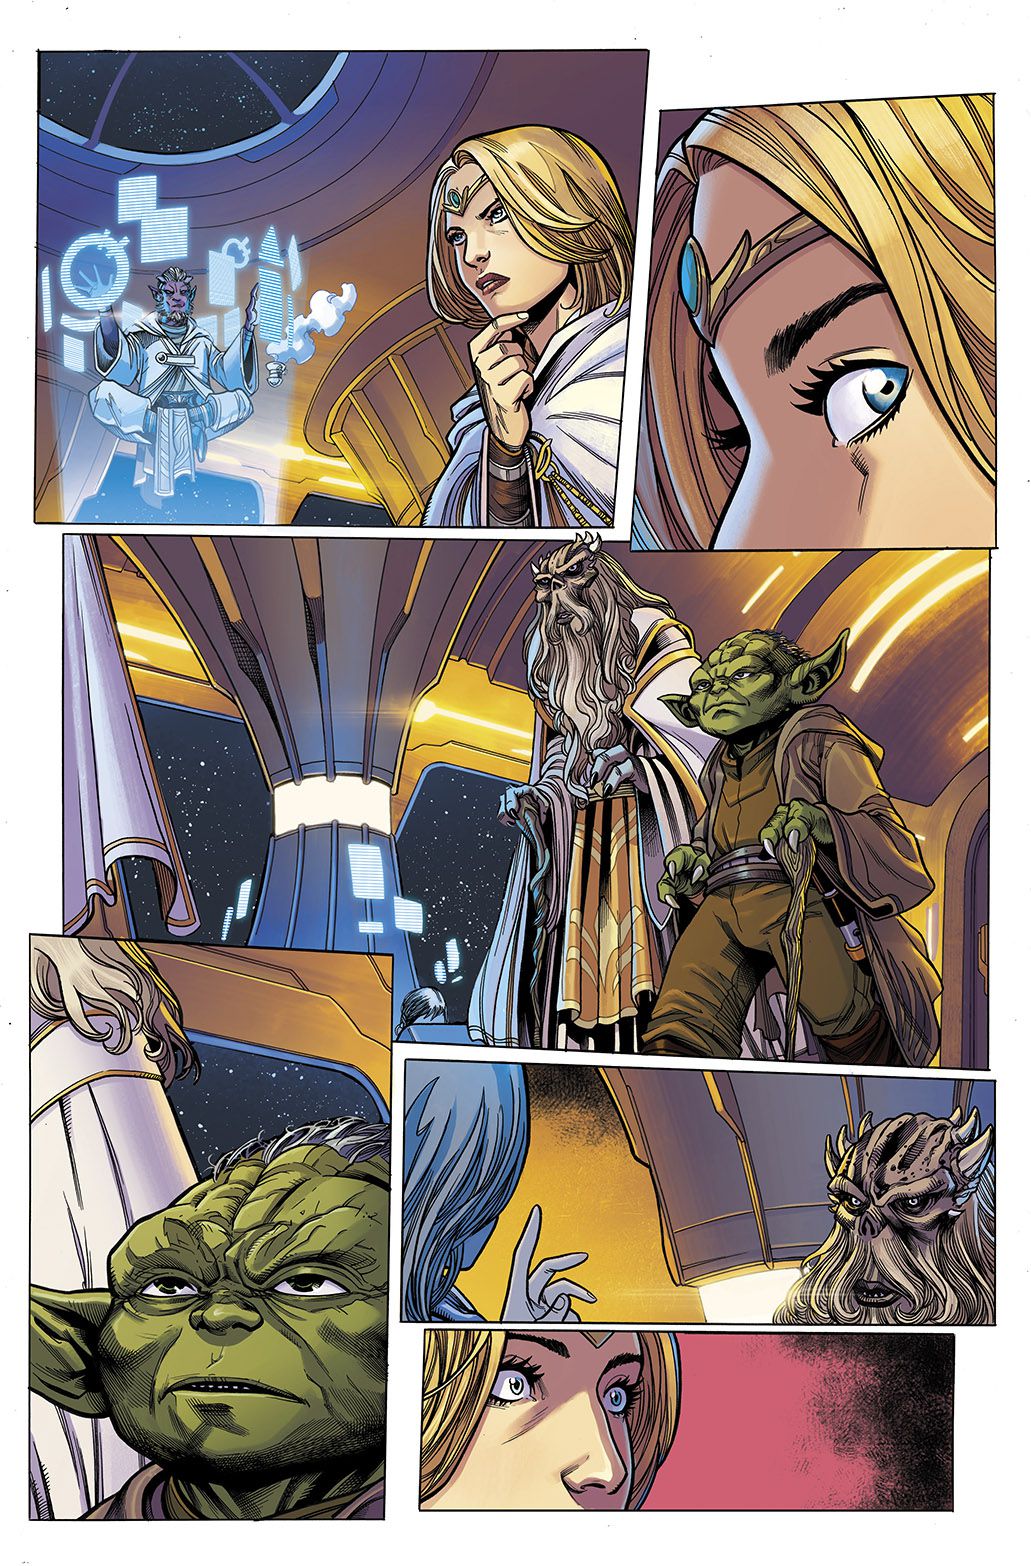 Jedi-mästaren Avar Kriss ser förvånad bort från den leviterande Estala Maru för att se Grandmasters Veter och Yoda närma sig, i Star Wars: The High Republic # 1, Marvel Comics (2021). 